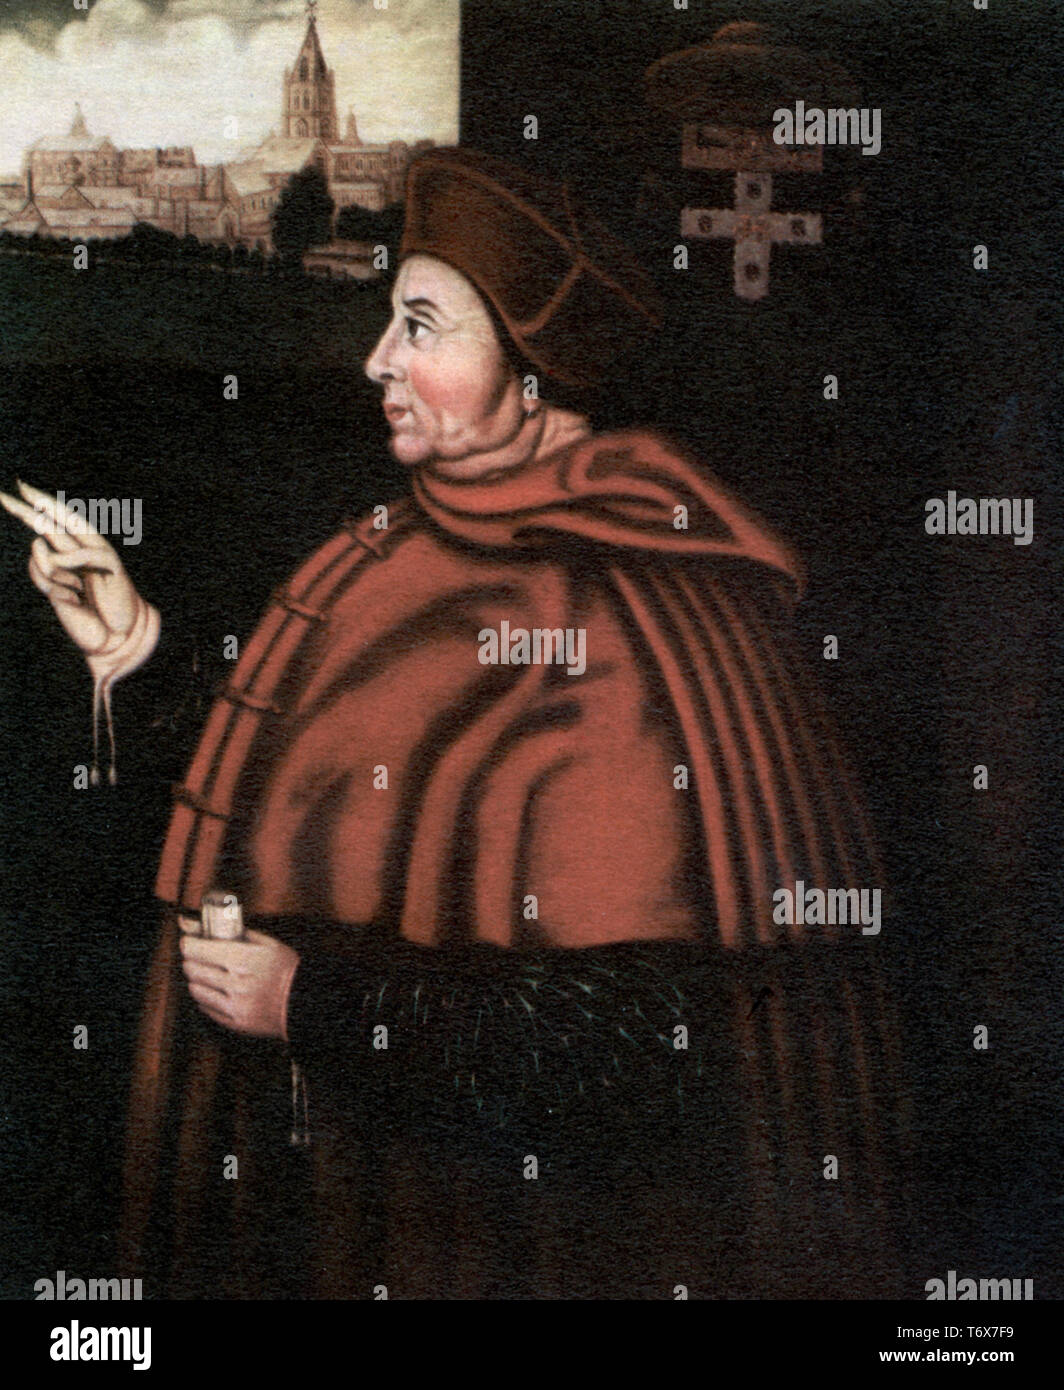 Cardinal Thomas Wolsey (c1473-1530), 16th siècle. Après Sampson Strong (C1550-1611). Archevêque de York et Lord Chancelier d'Angleterre. Le cardinal Thomas Wolsey évêque anglais, homme d'État et cardinal de l'Église catholique. Banque D'Images